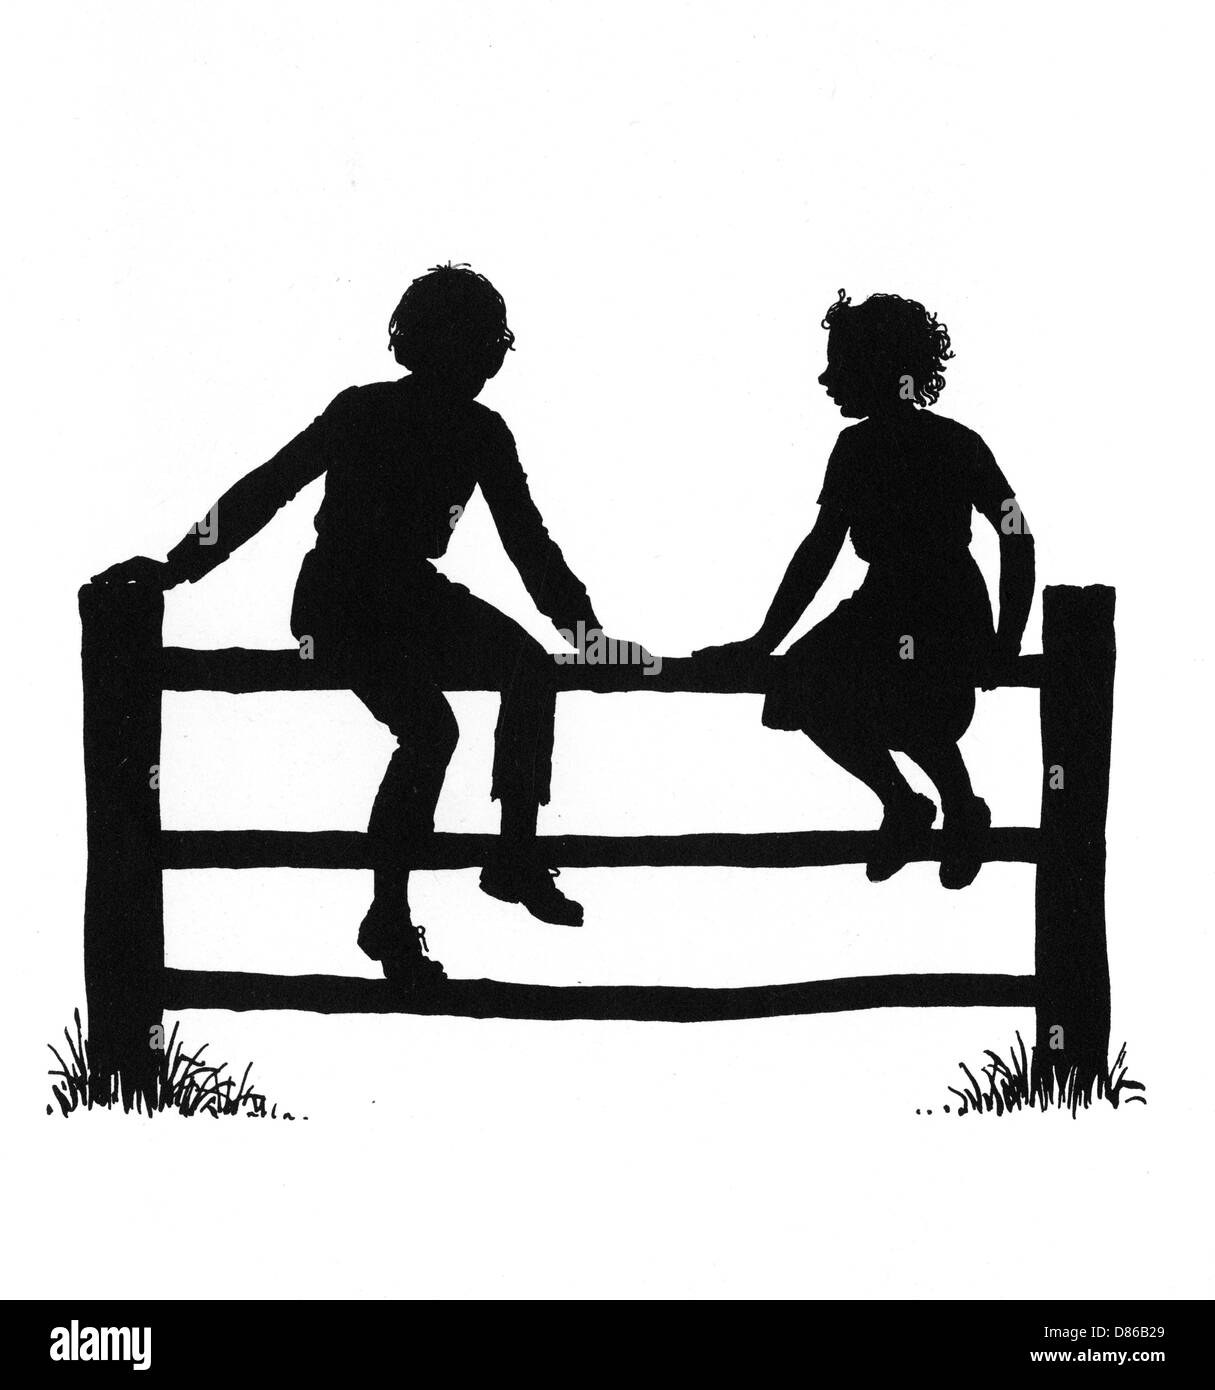 Dsoutenir et son ami Susan assis sur une clôture Banque D'Images